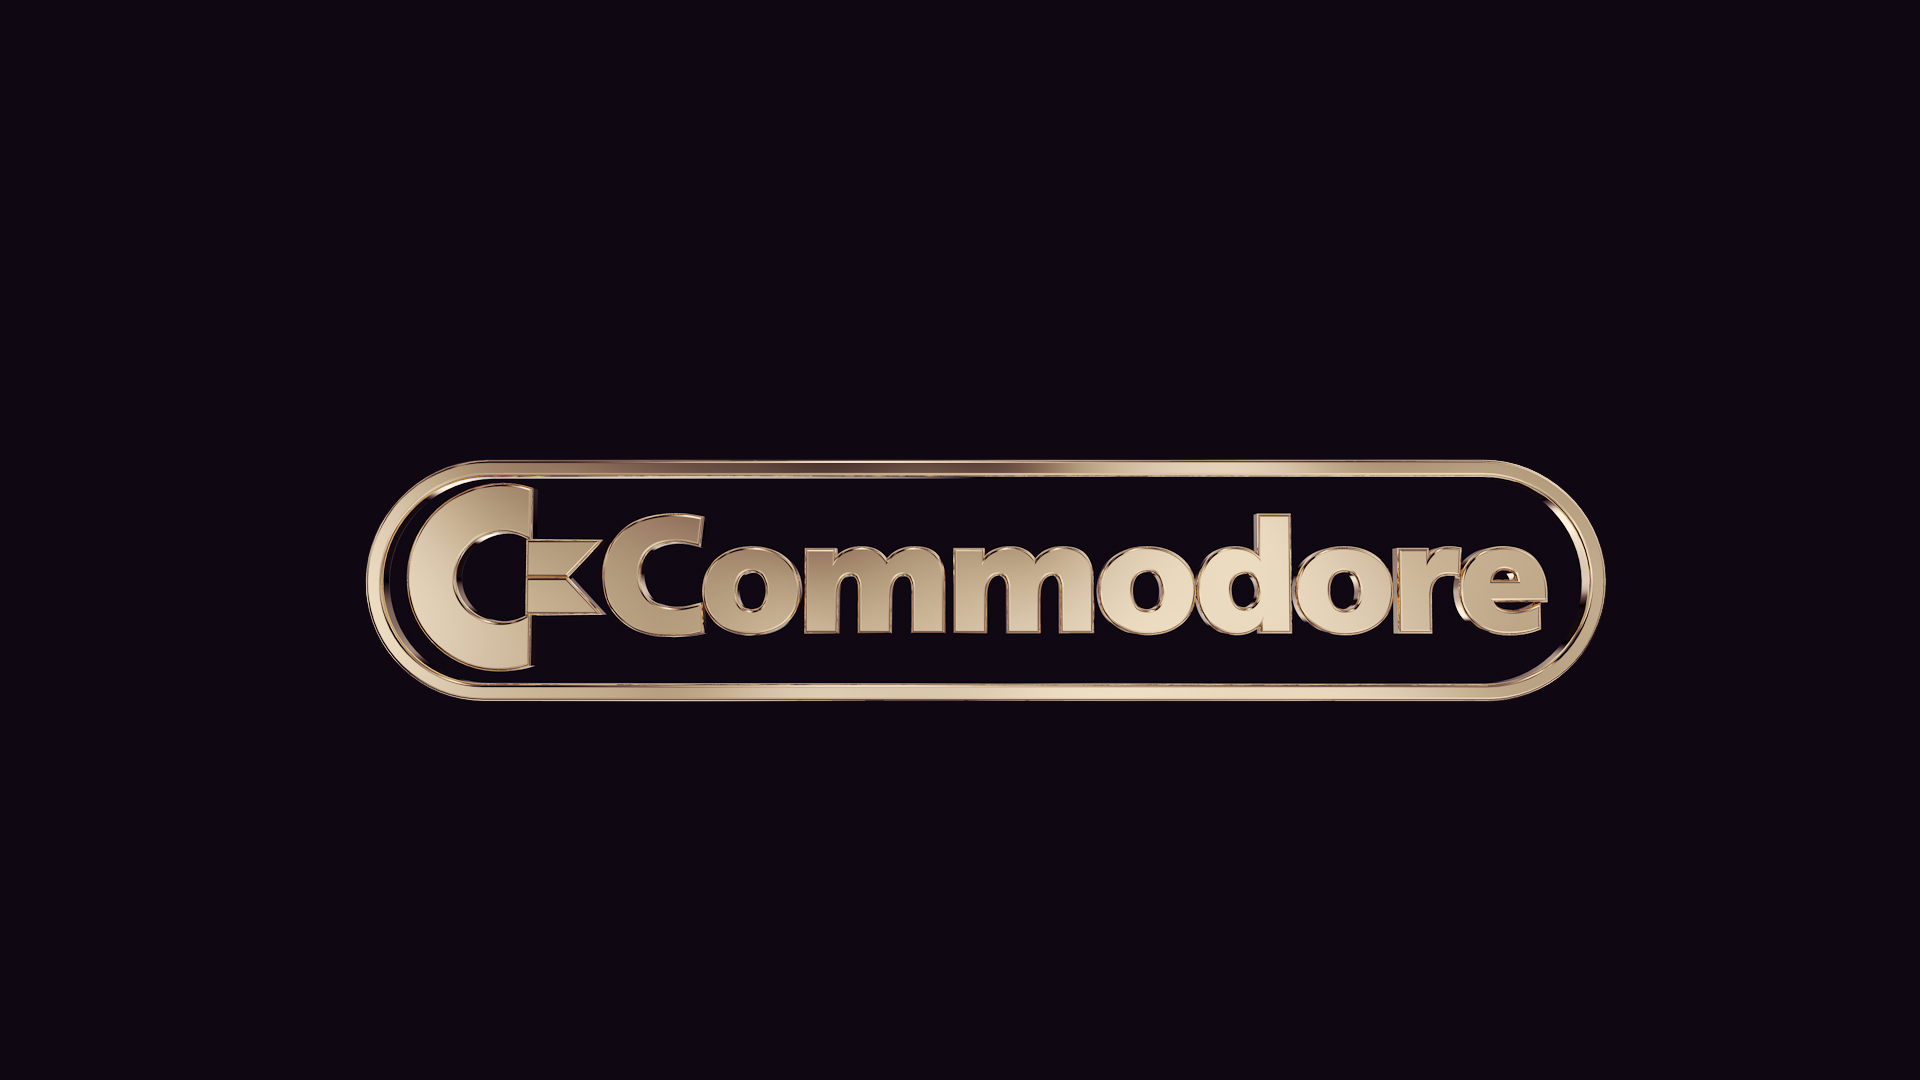 Commodore Commodore 64 Commodore 64 1920x1080